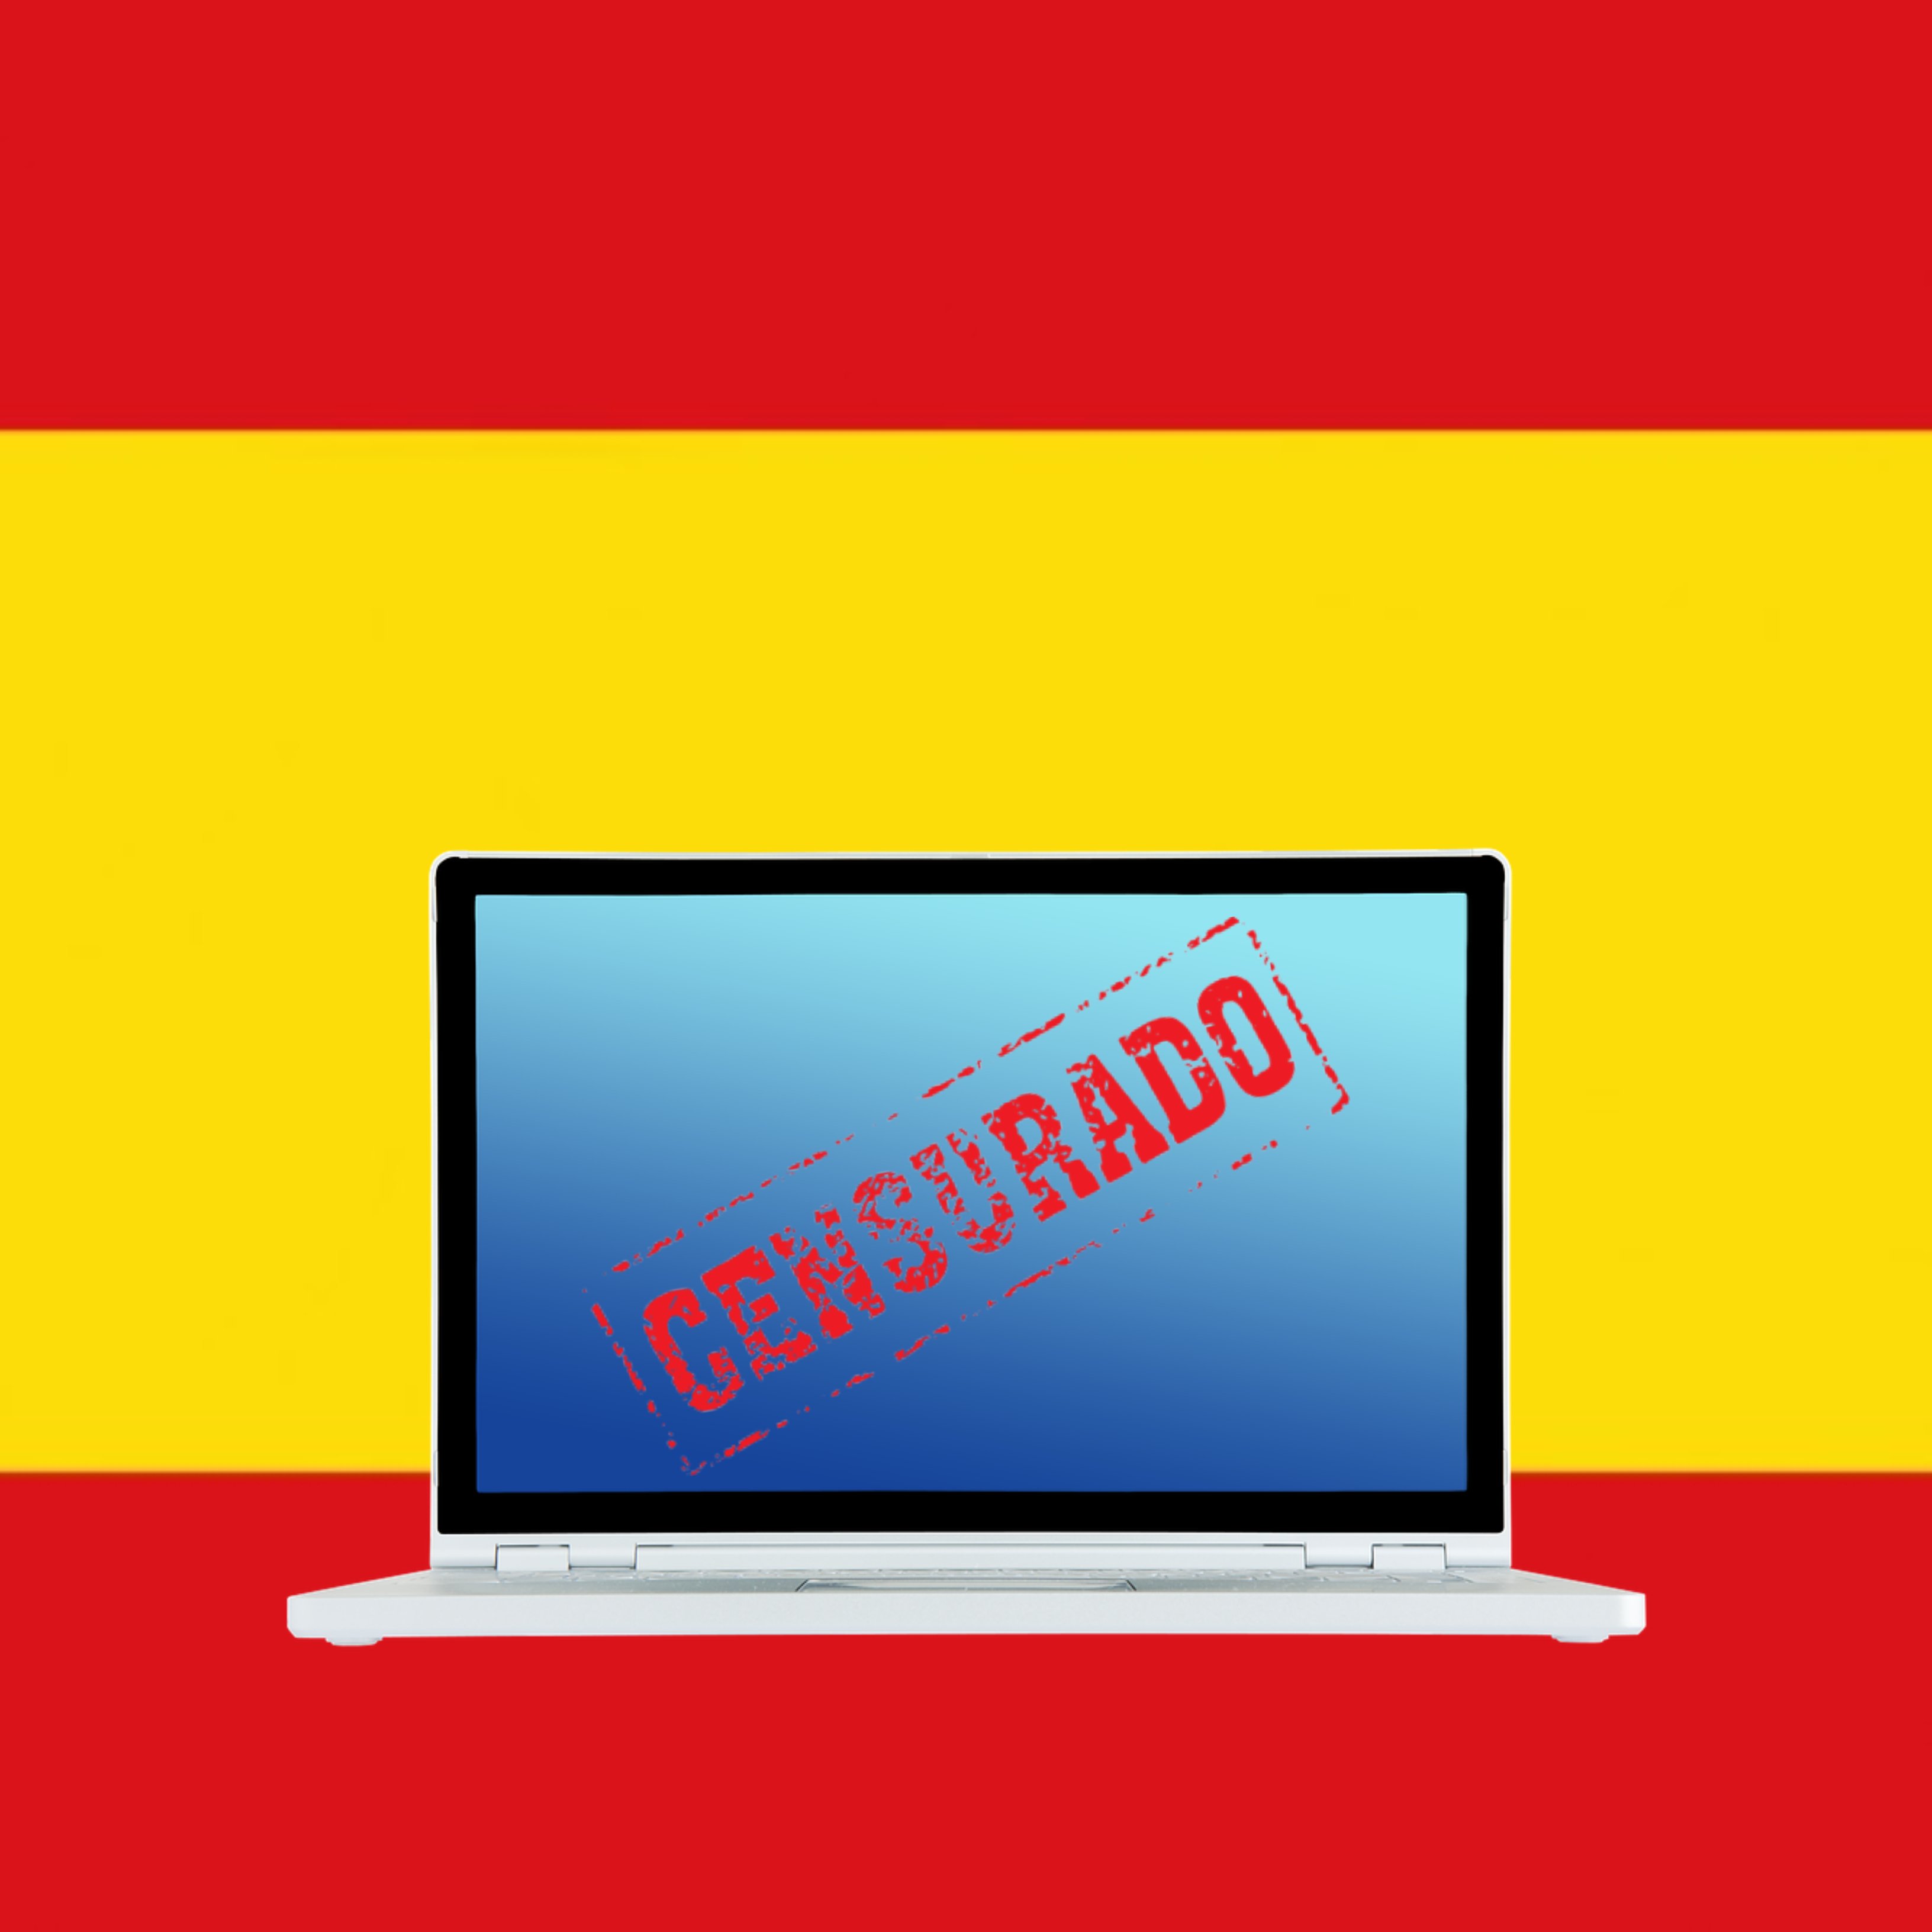 El 155 digital a Espanya: des del tancament de webs fins al tall d'internet